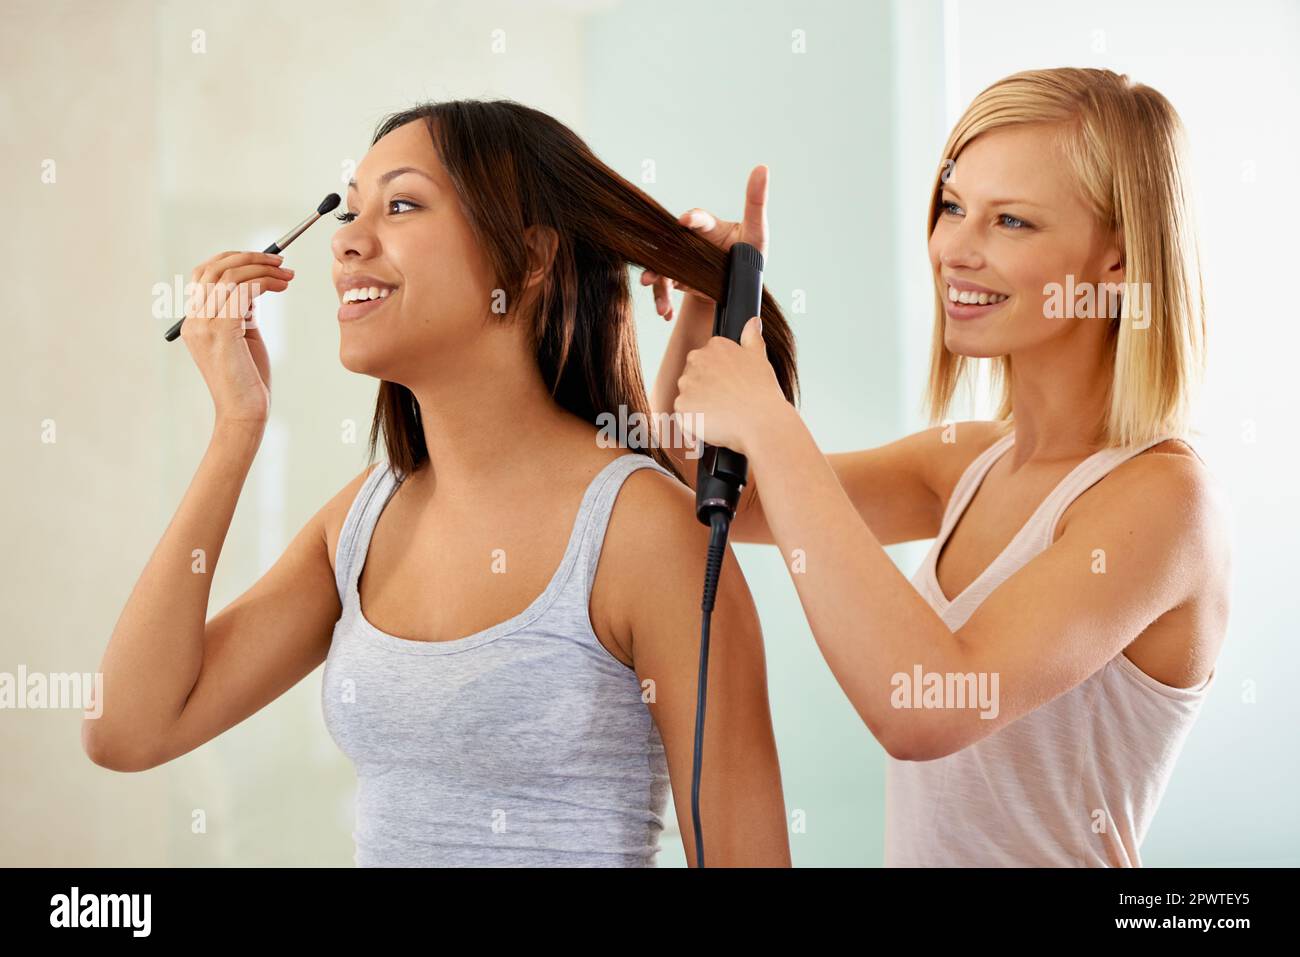 Sie hilft ihr, gut auszusehen. Eine junge Frau, die sich schminkt, während ihr Freund ihr Haar glättet. Stockfoto